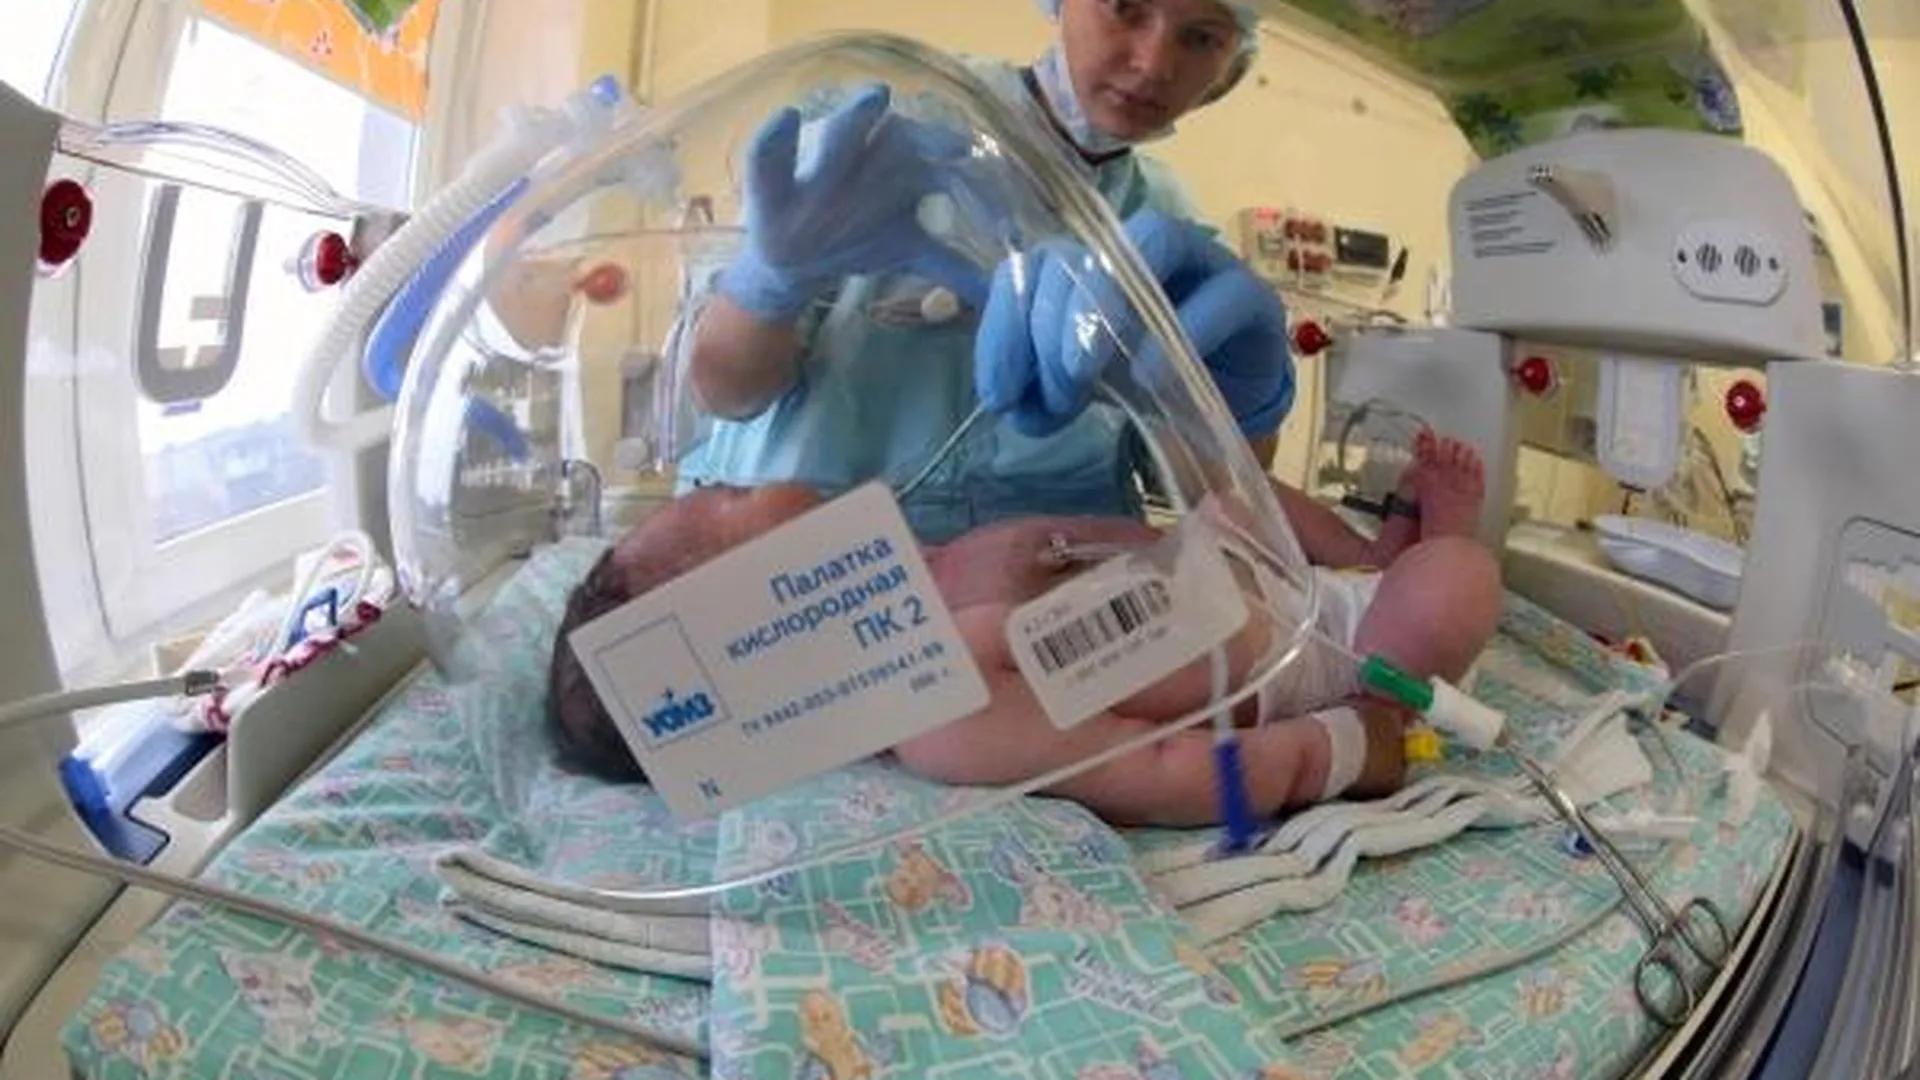 Почти на 3% снизилась в Подмосковье младенческая смертность - Забралова